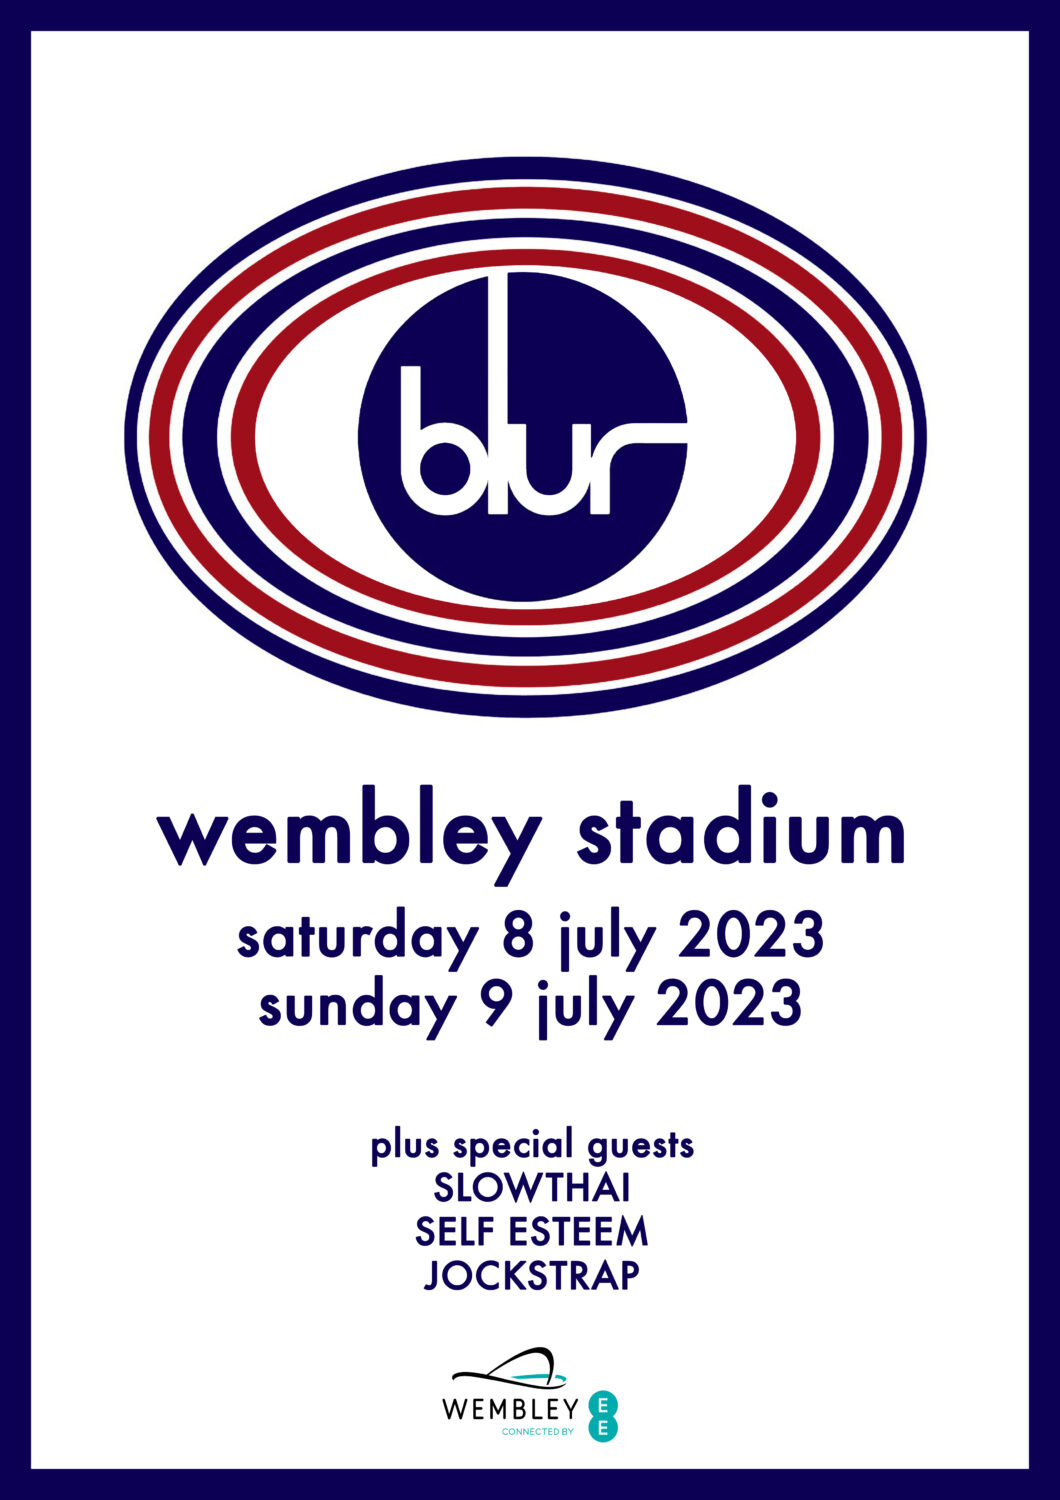 blur uk tour dates 2023